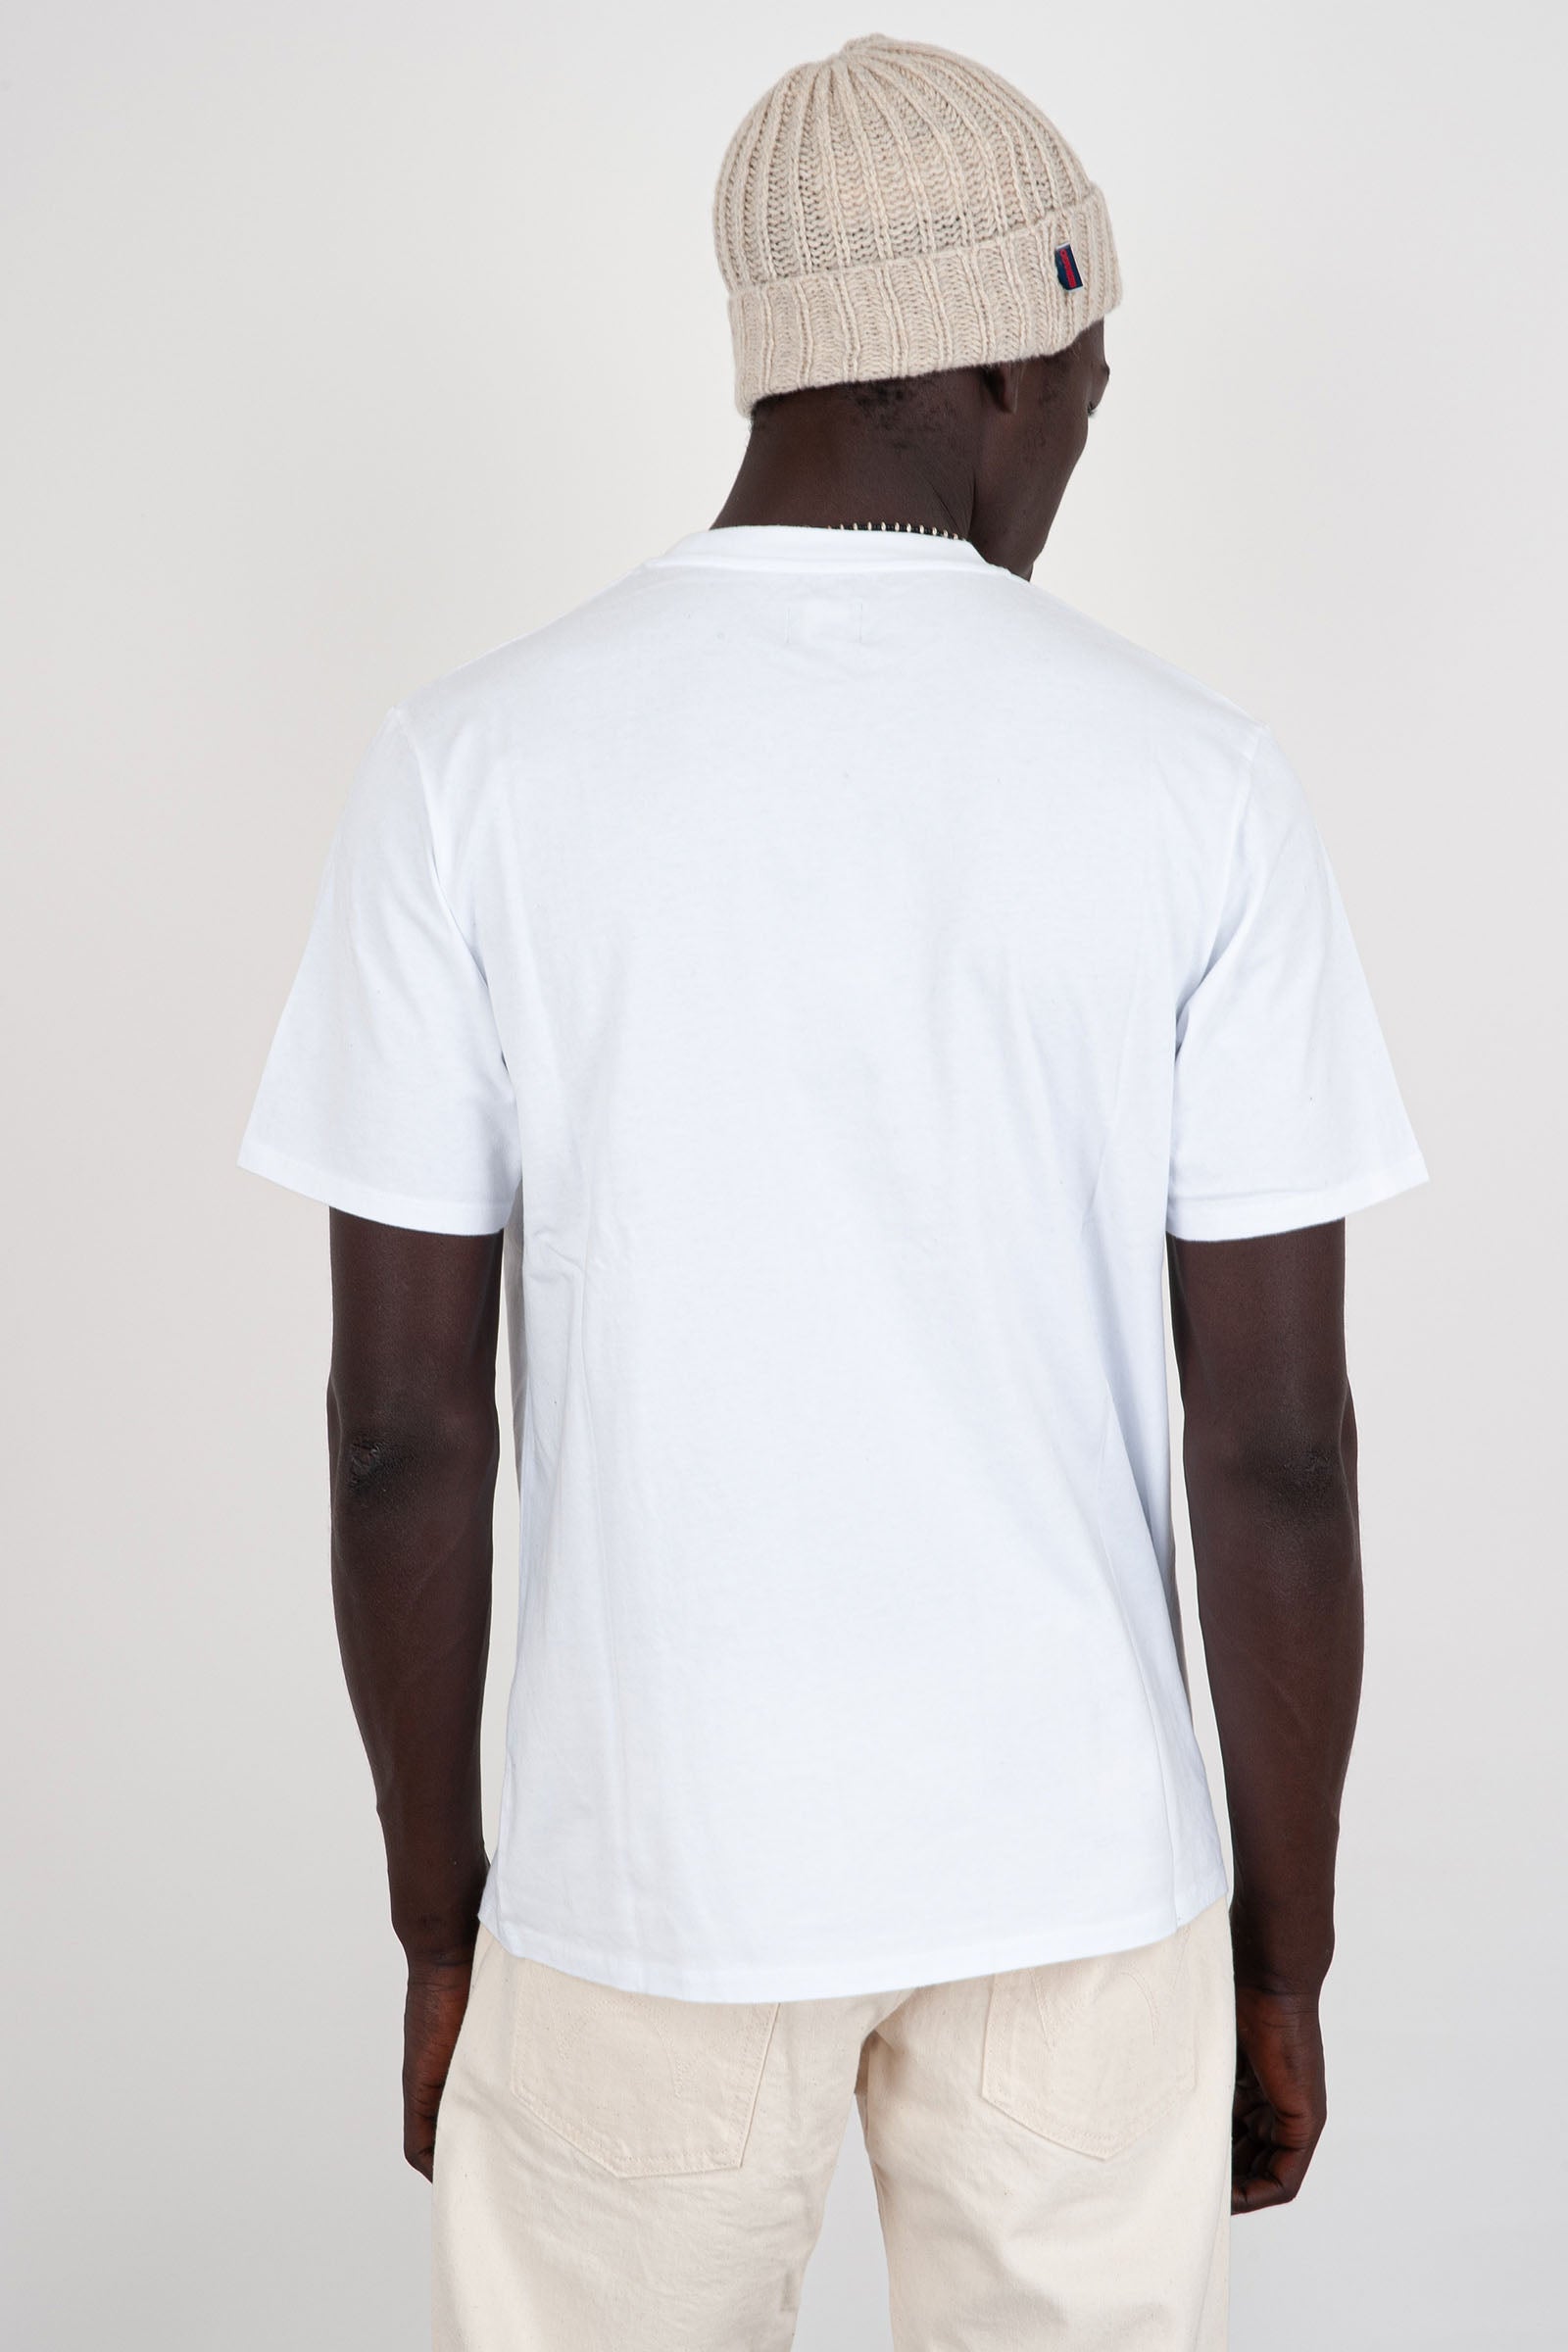 Japanese Sun T-Shirt White for Men - 4